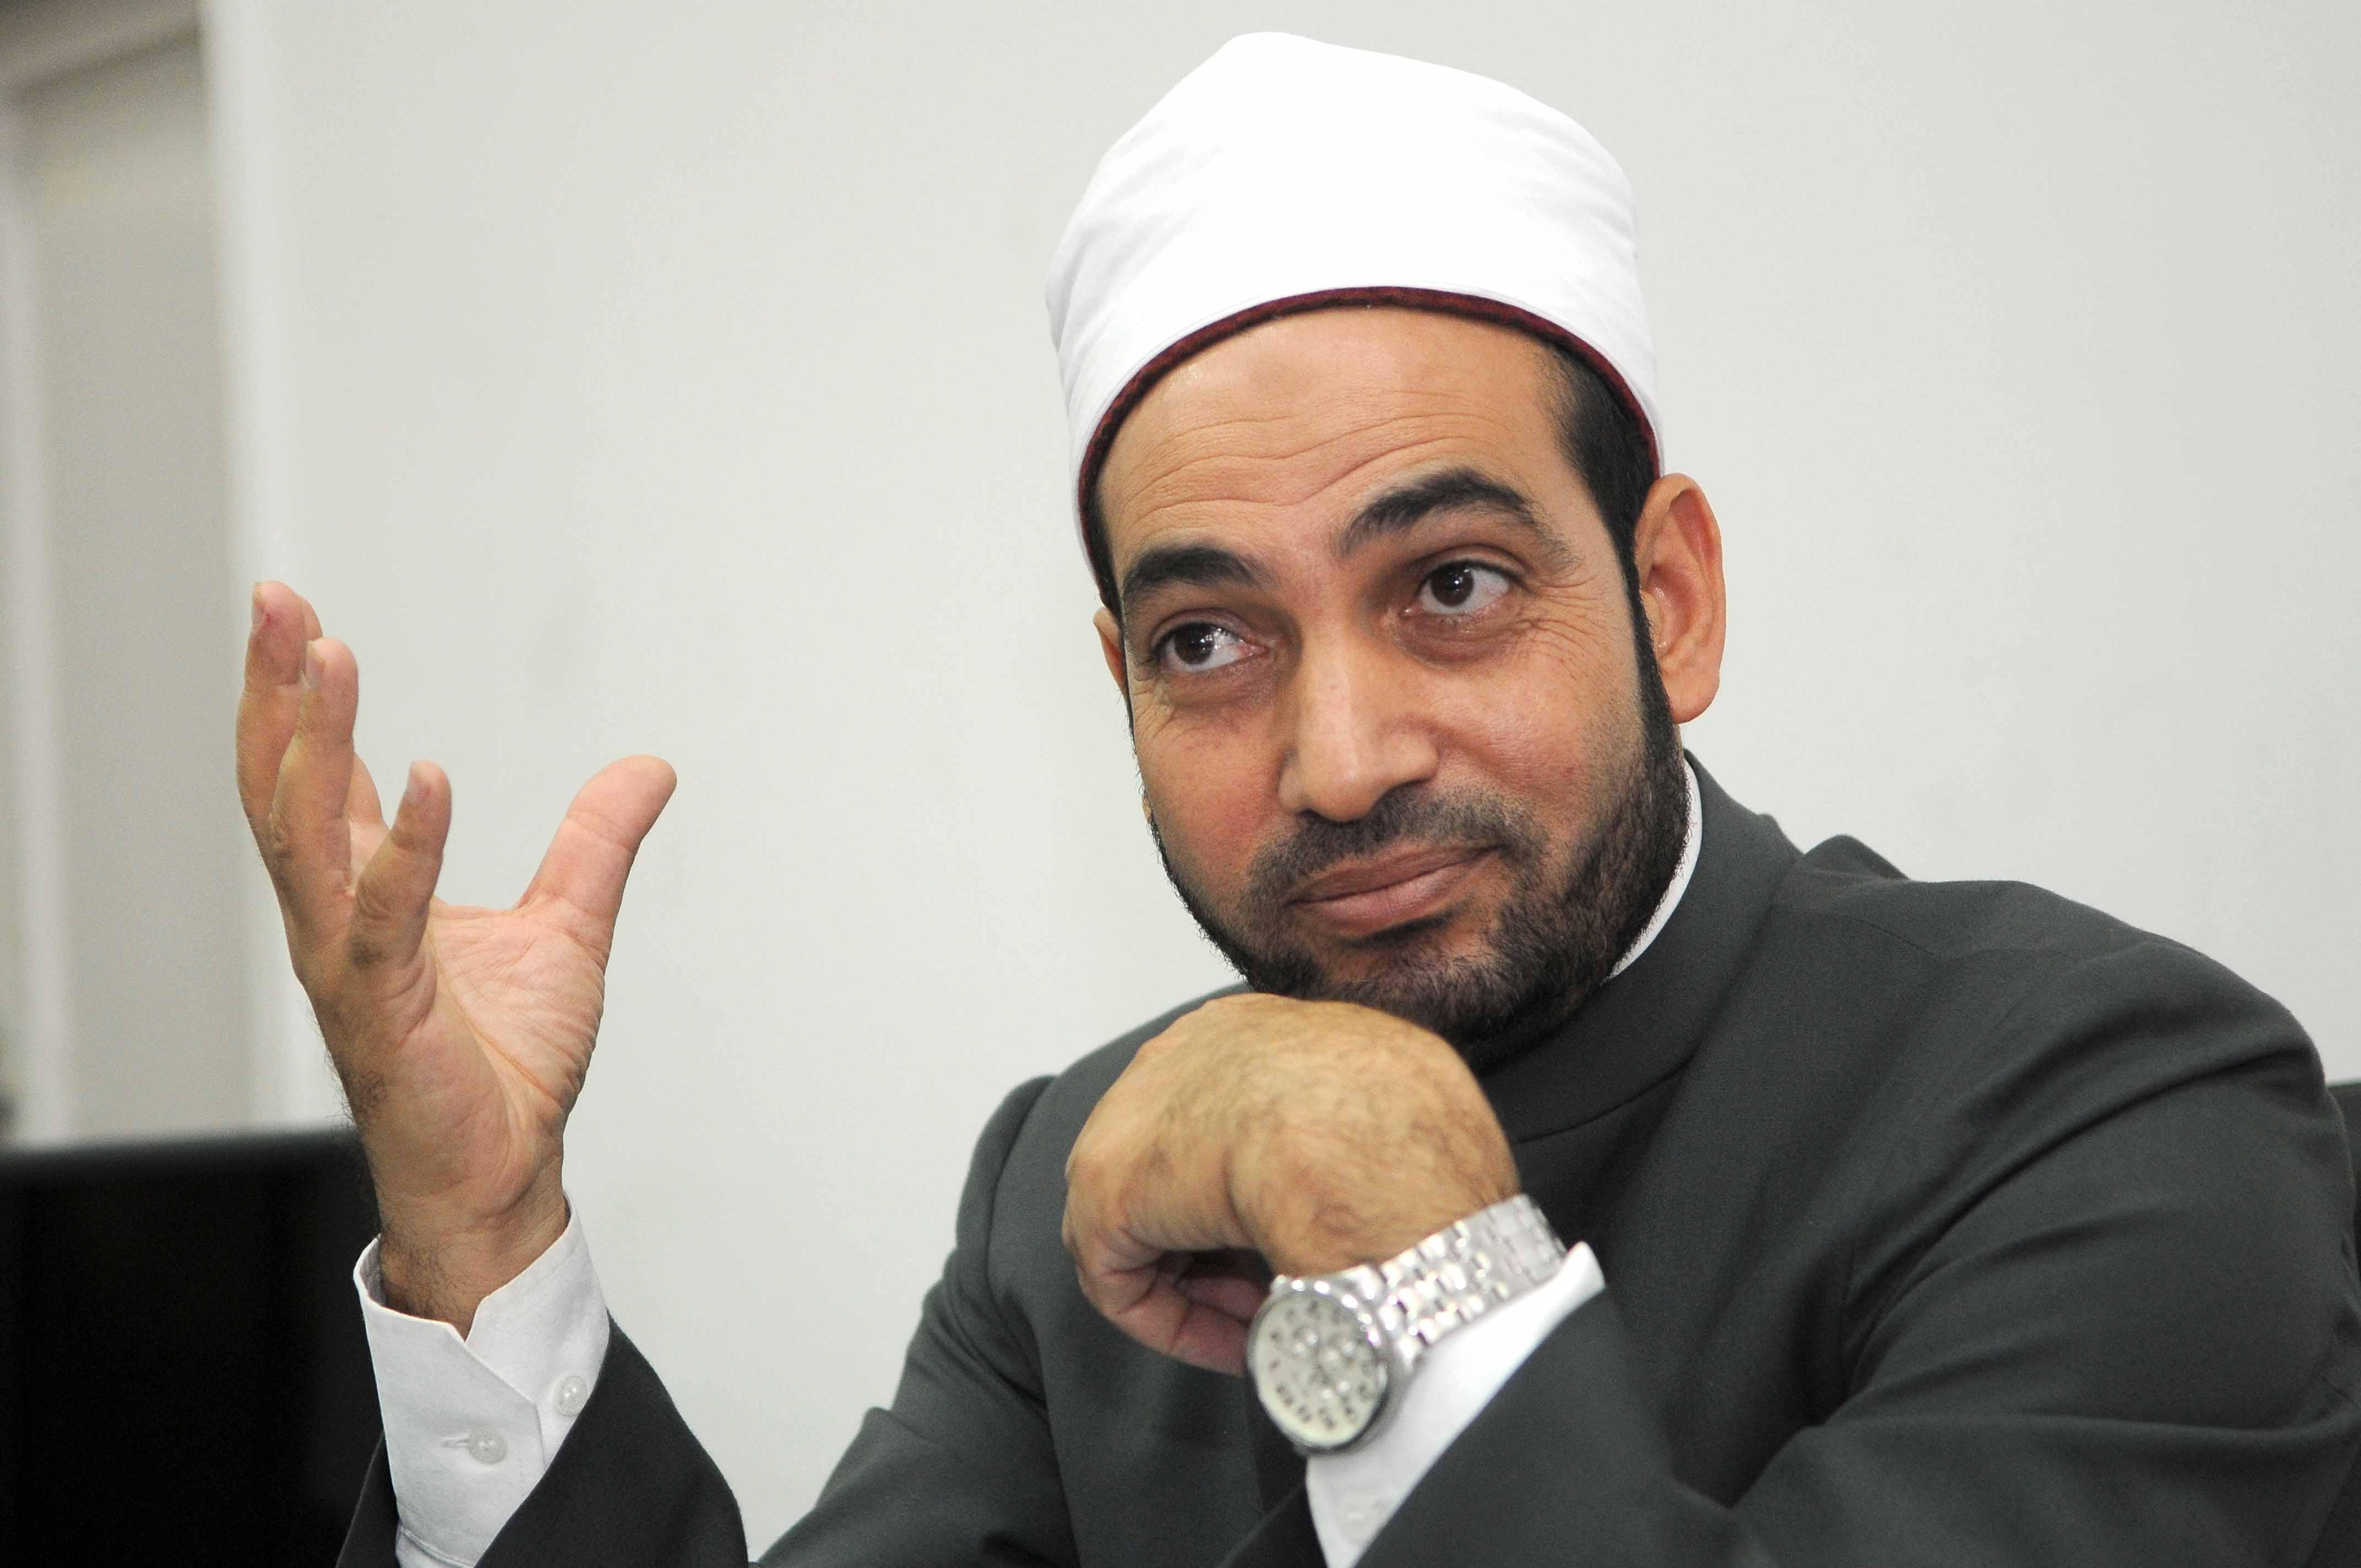 وزارة الأوقاف تمنع “عبدالجليل” و”رشدي” رسميا من الإمامة والخطابة